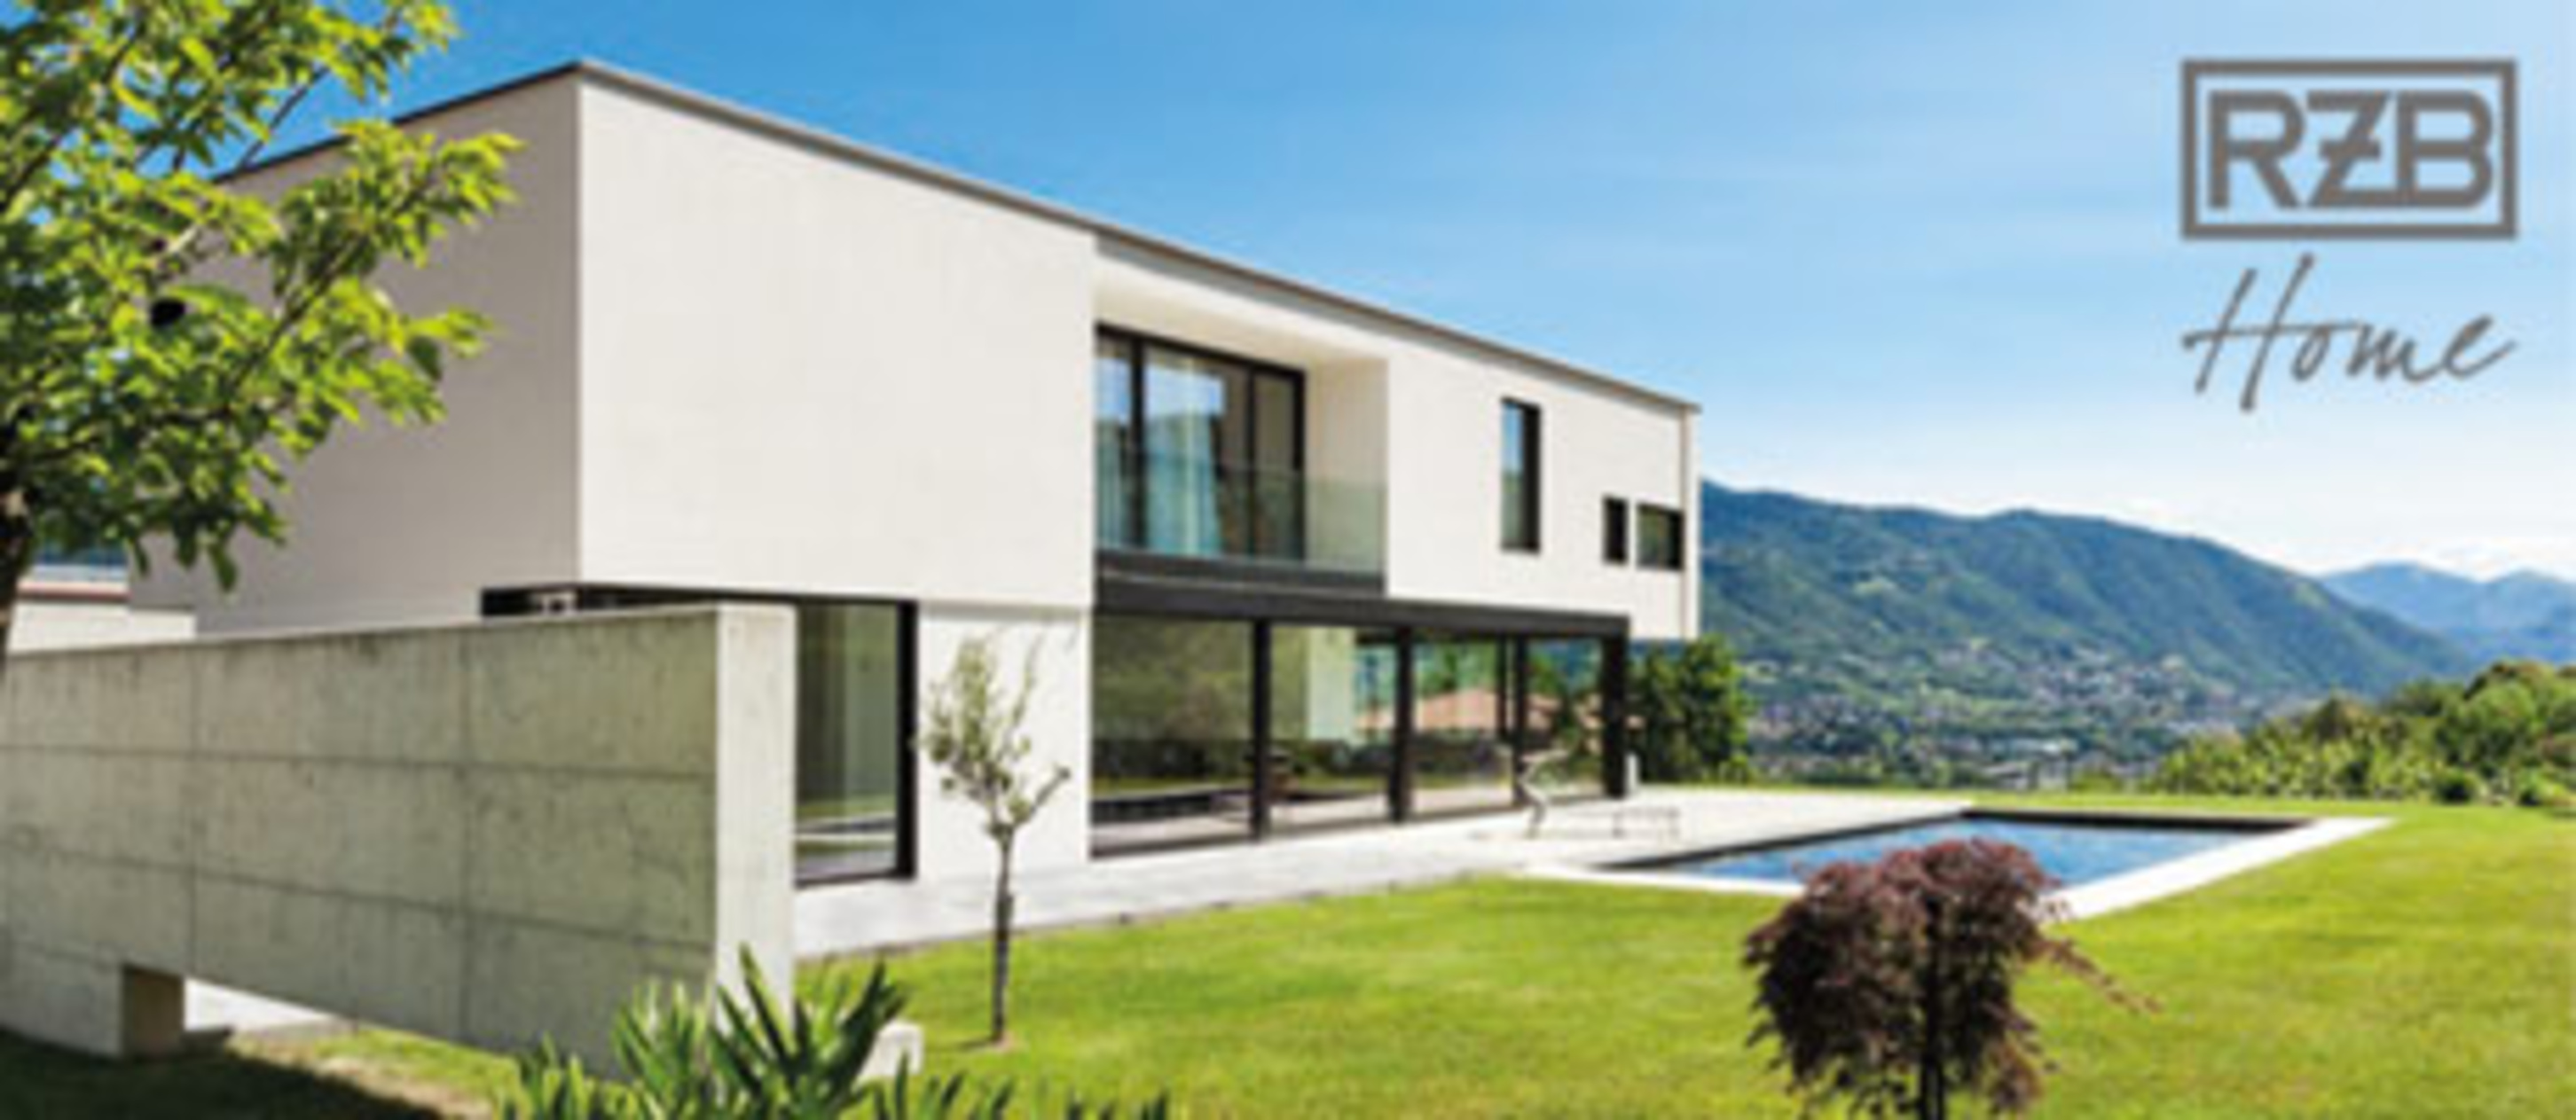 RZB Home + Basic bei MS Elektro Seiler GmbH&Co.KG in Braunichswalde